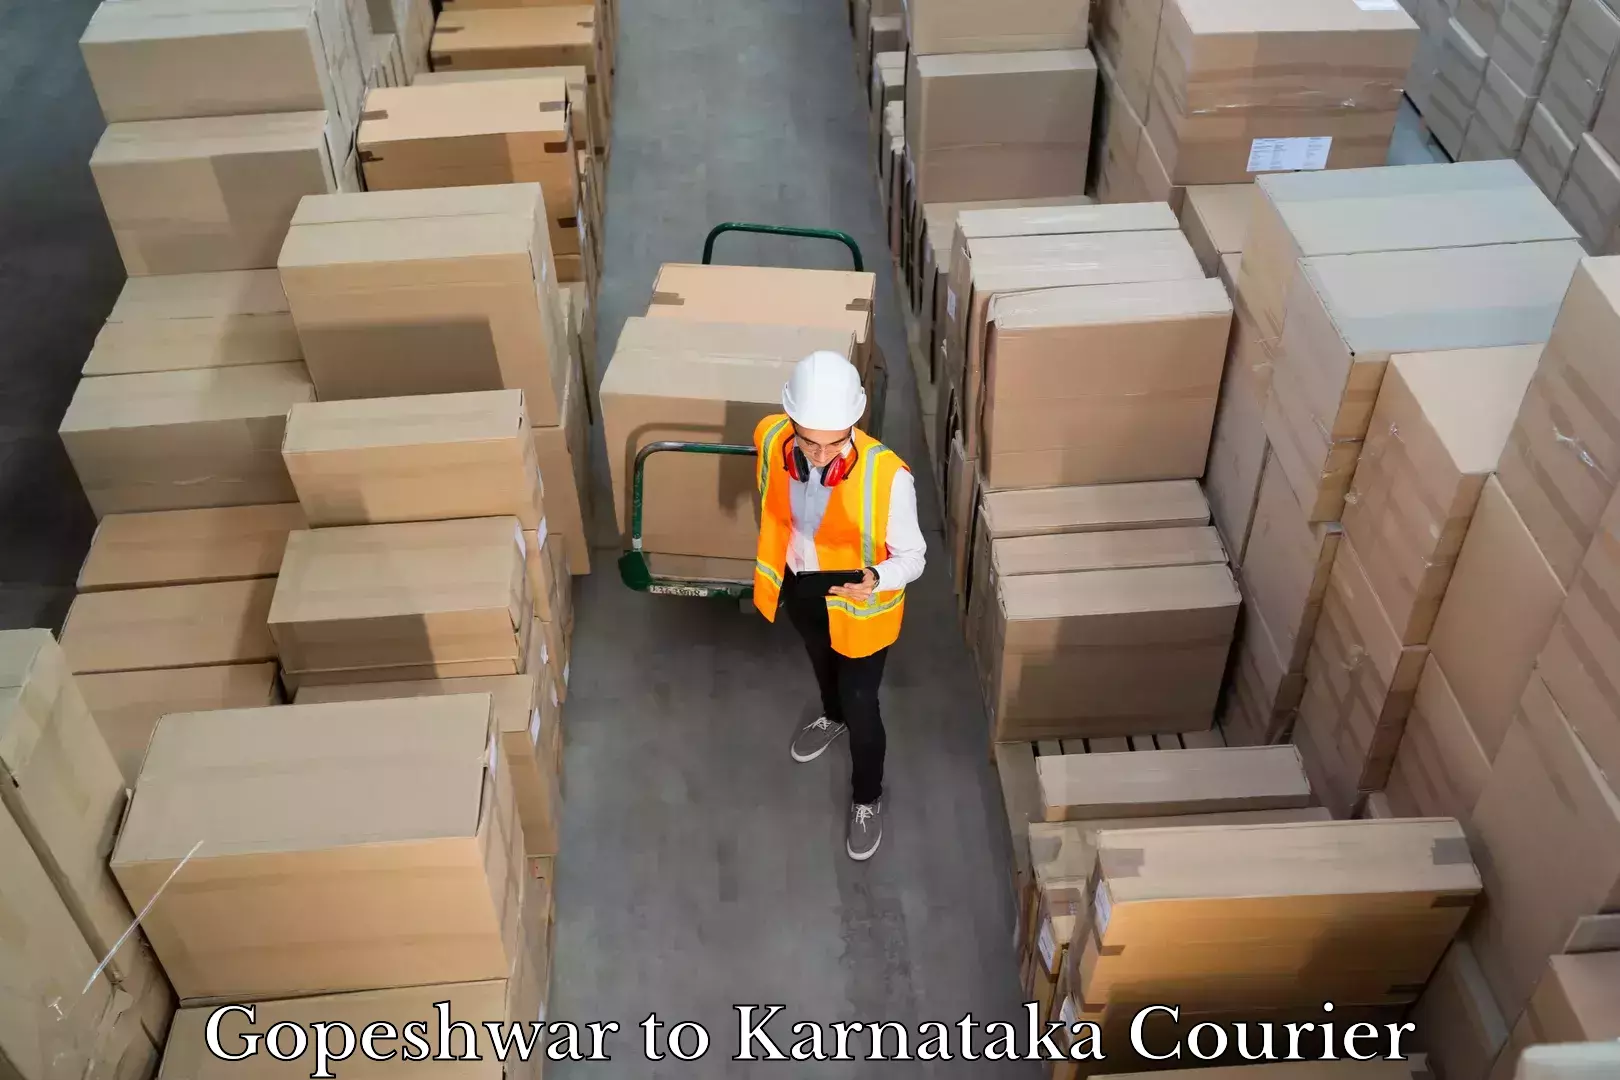 Luggage delivery solutions Gopeshwar to Yenepoya Mangalore